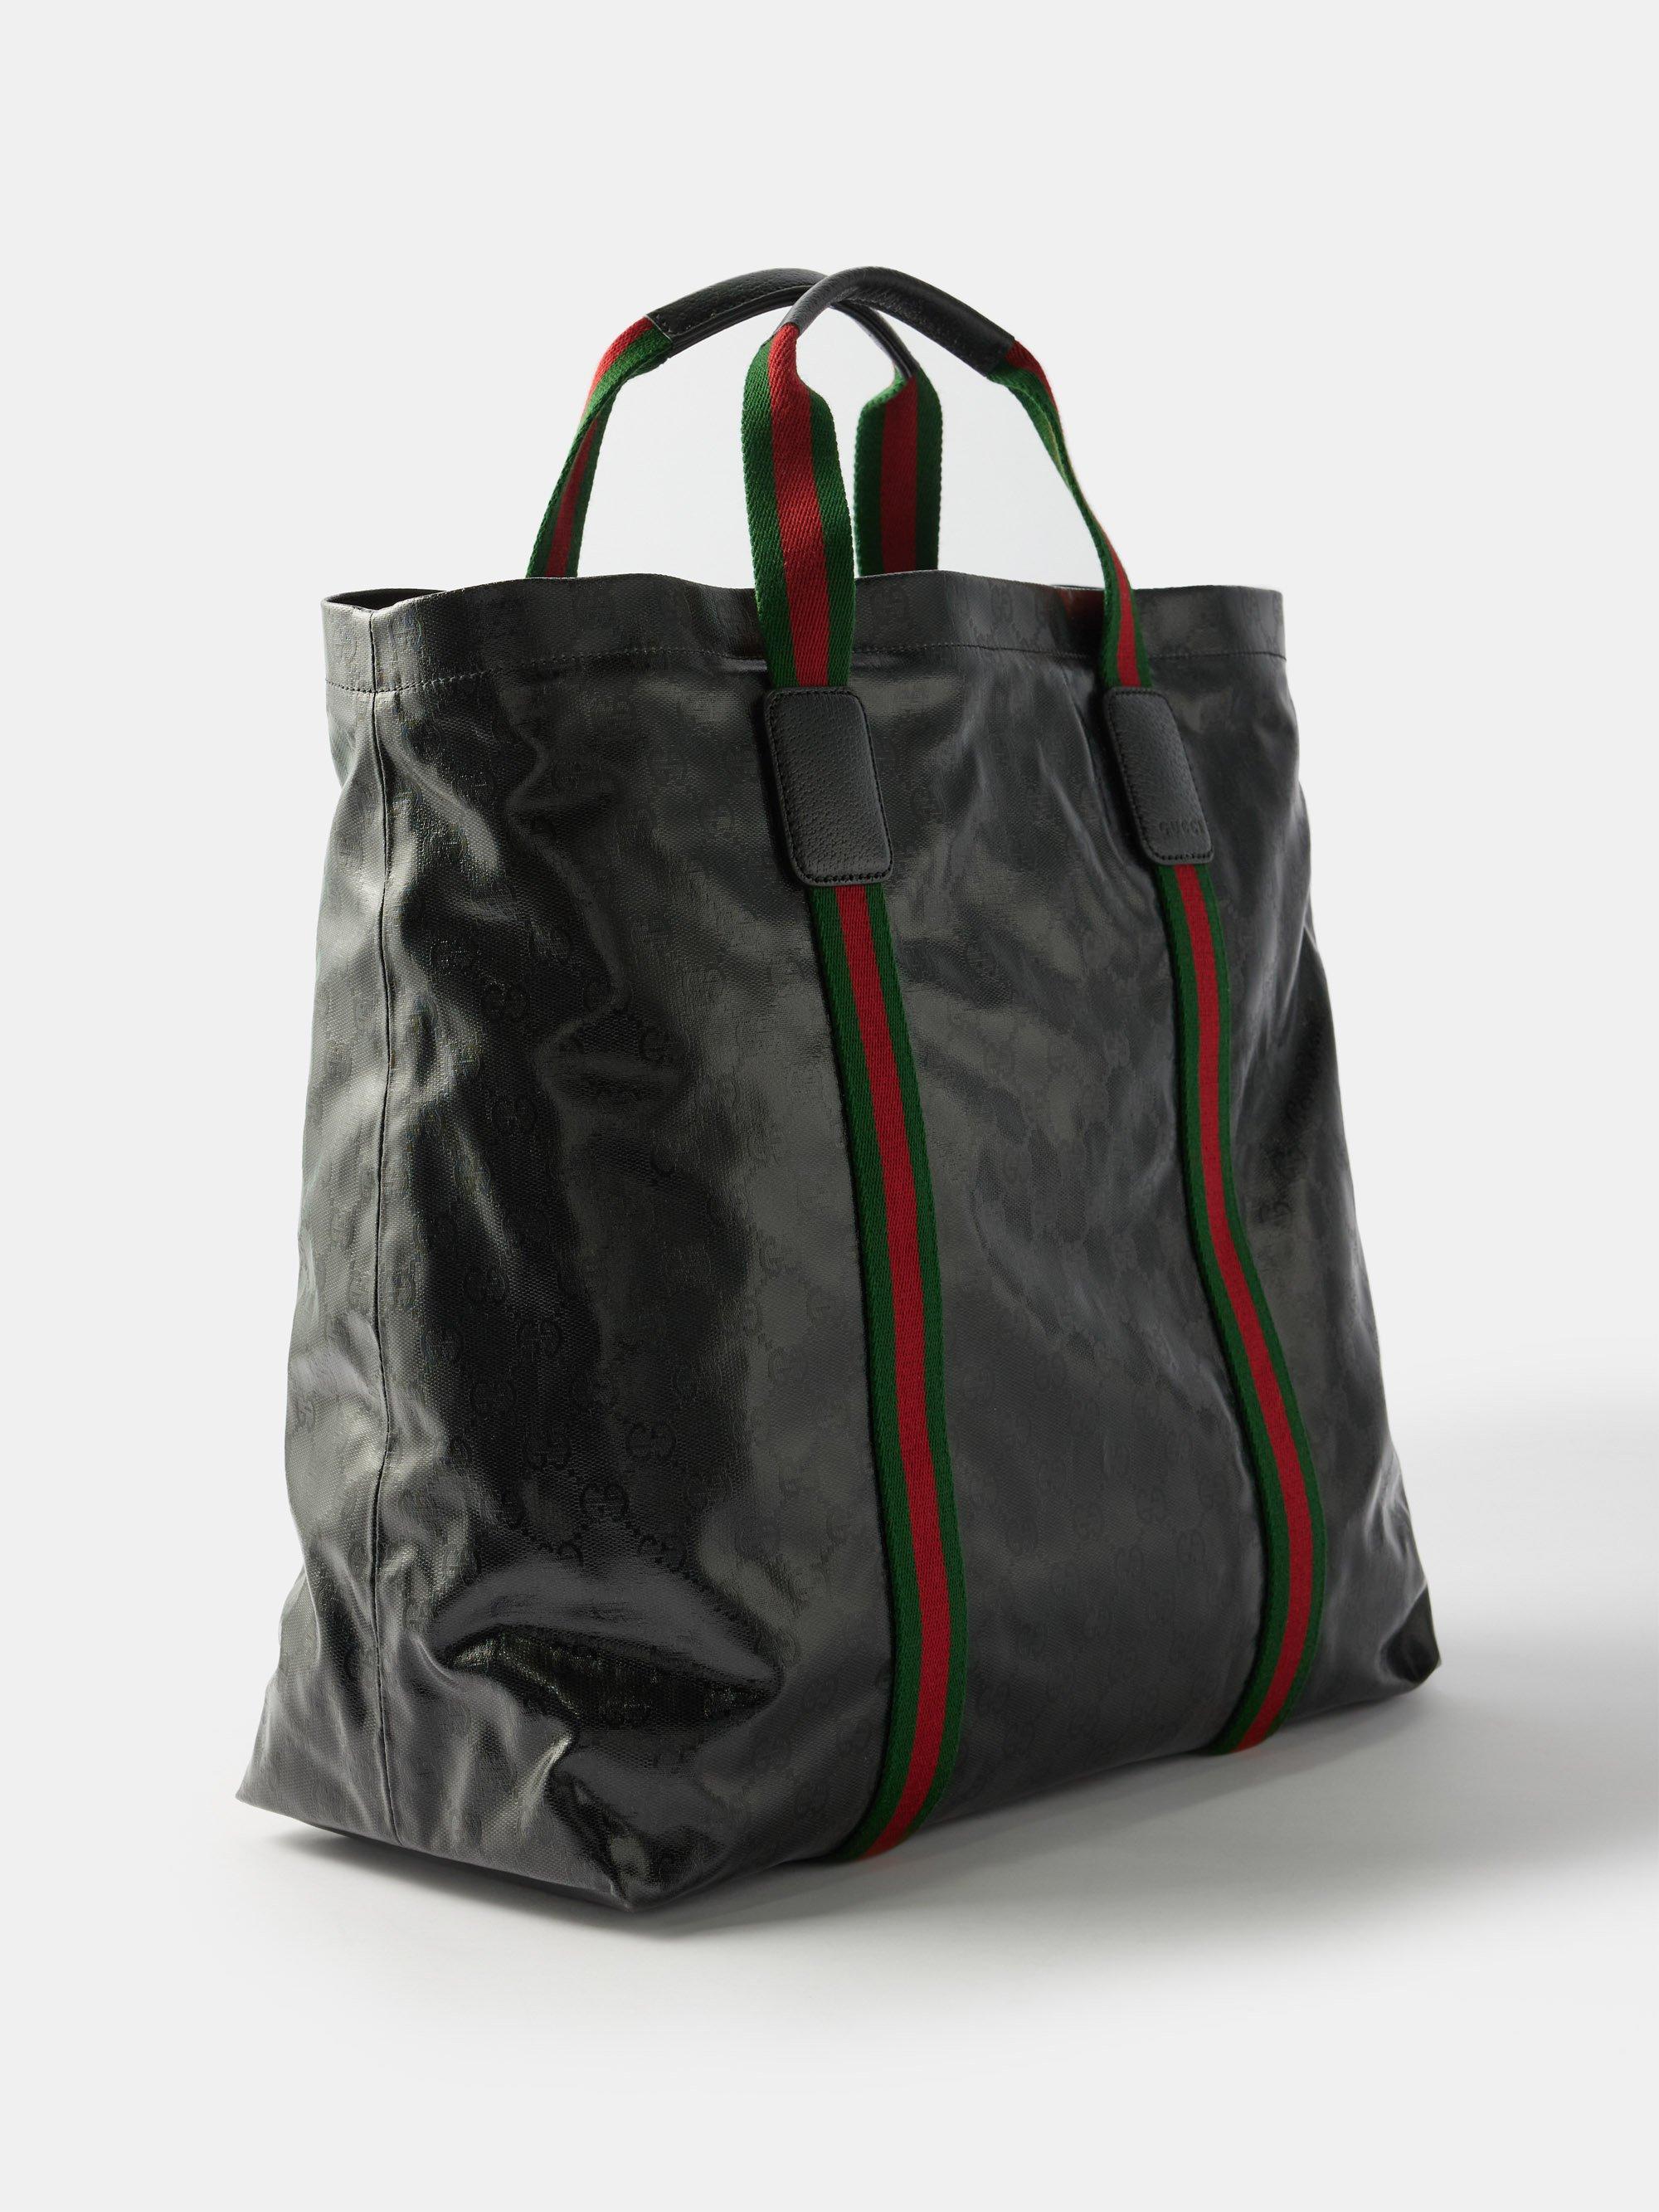 Black GG Supreme canvas tote bag, Gucci